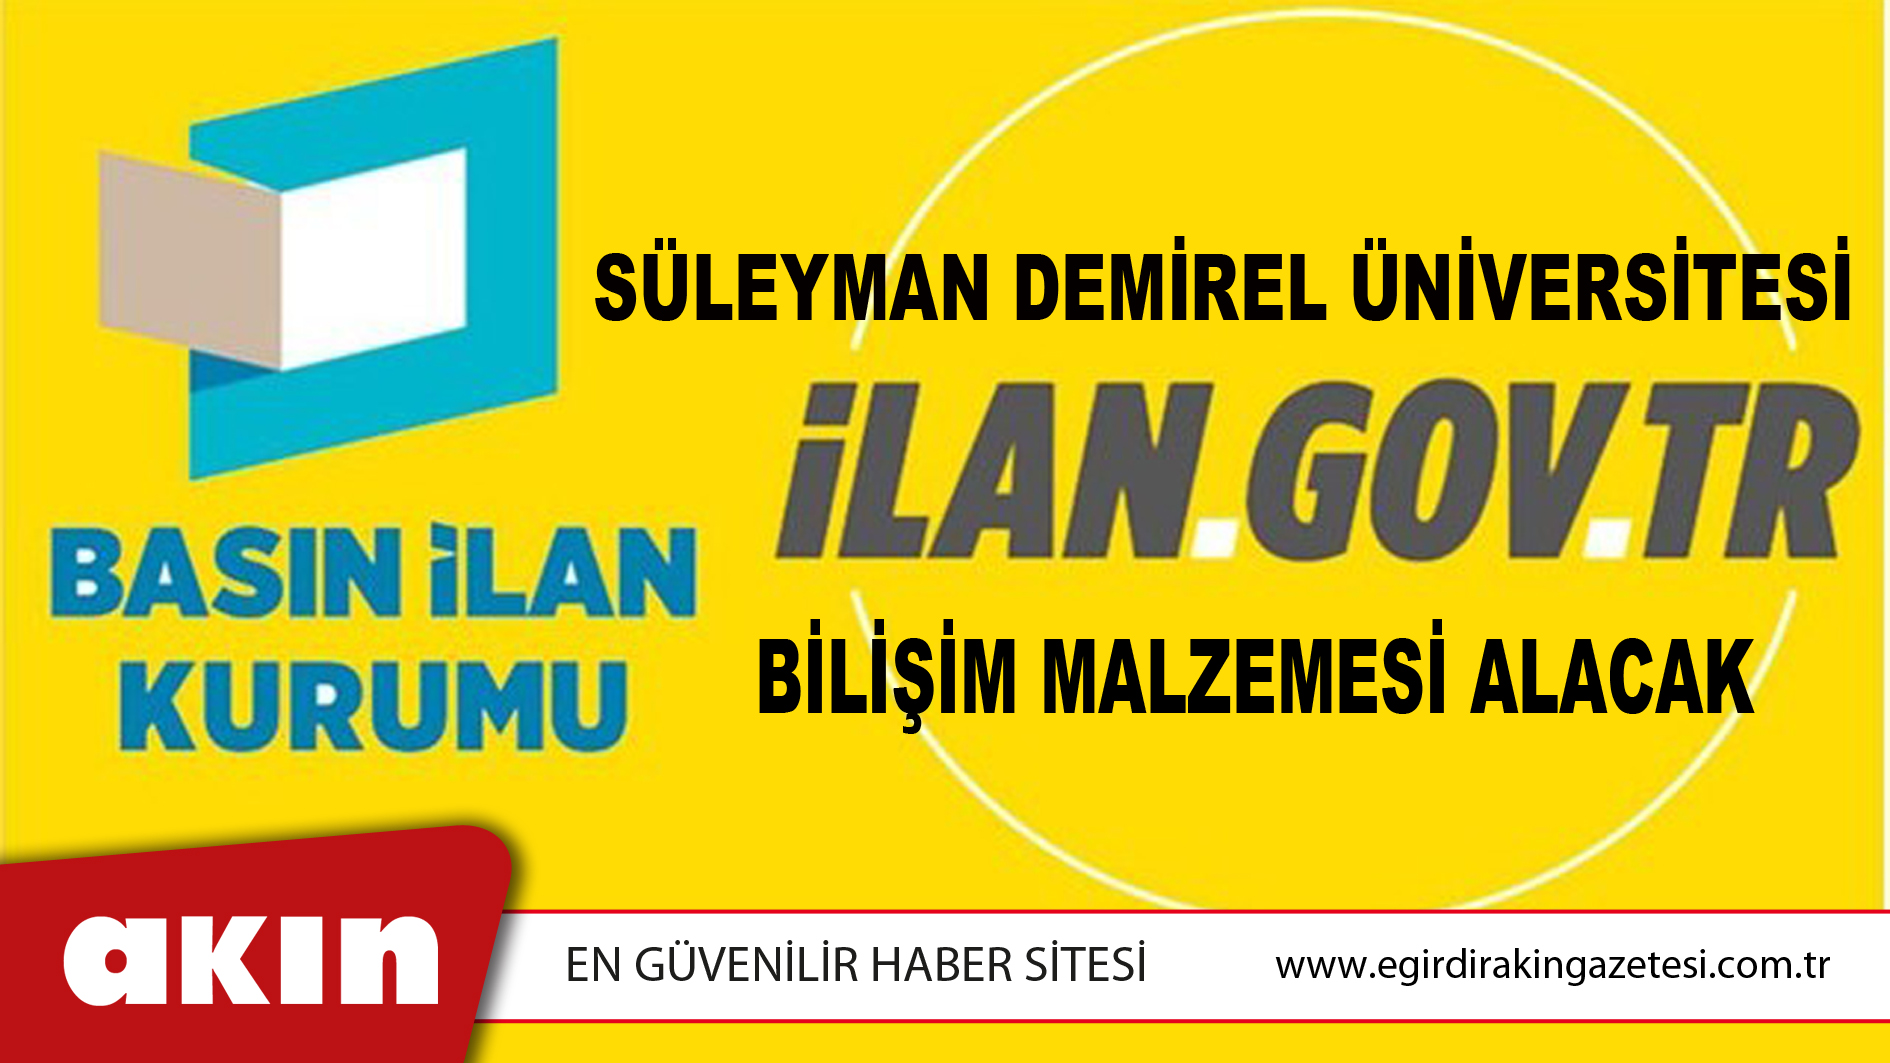 Süleyman Demirel Üniversitesi Bilişim Malzemesi Alacak